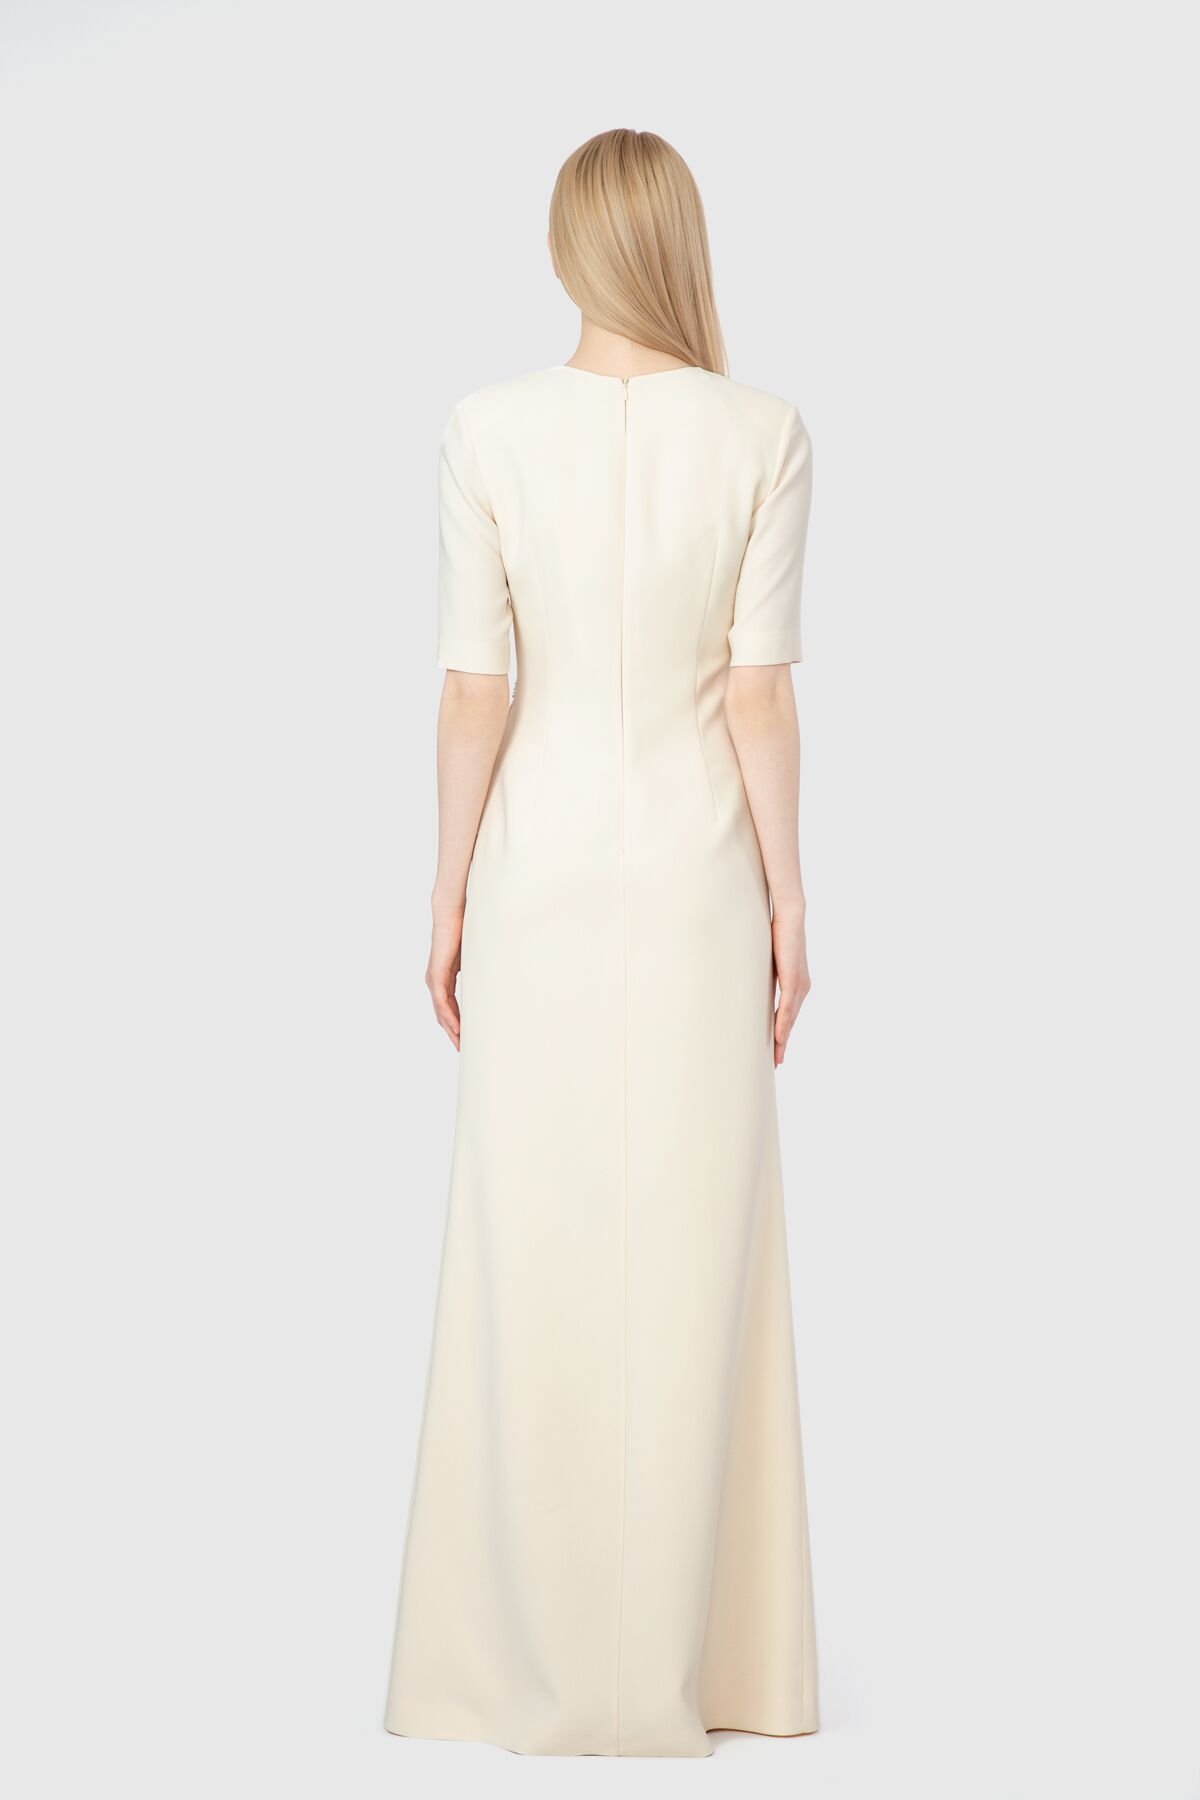 Embroidered Detailed Elegant Beige Evening Dress